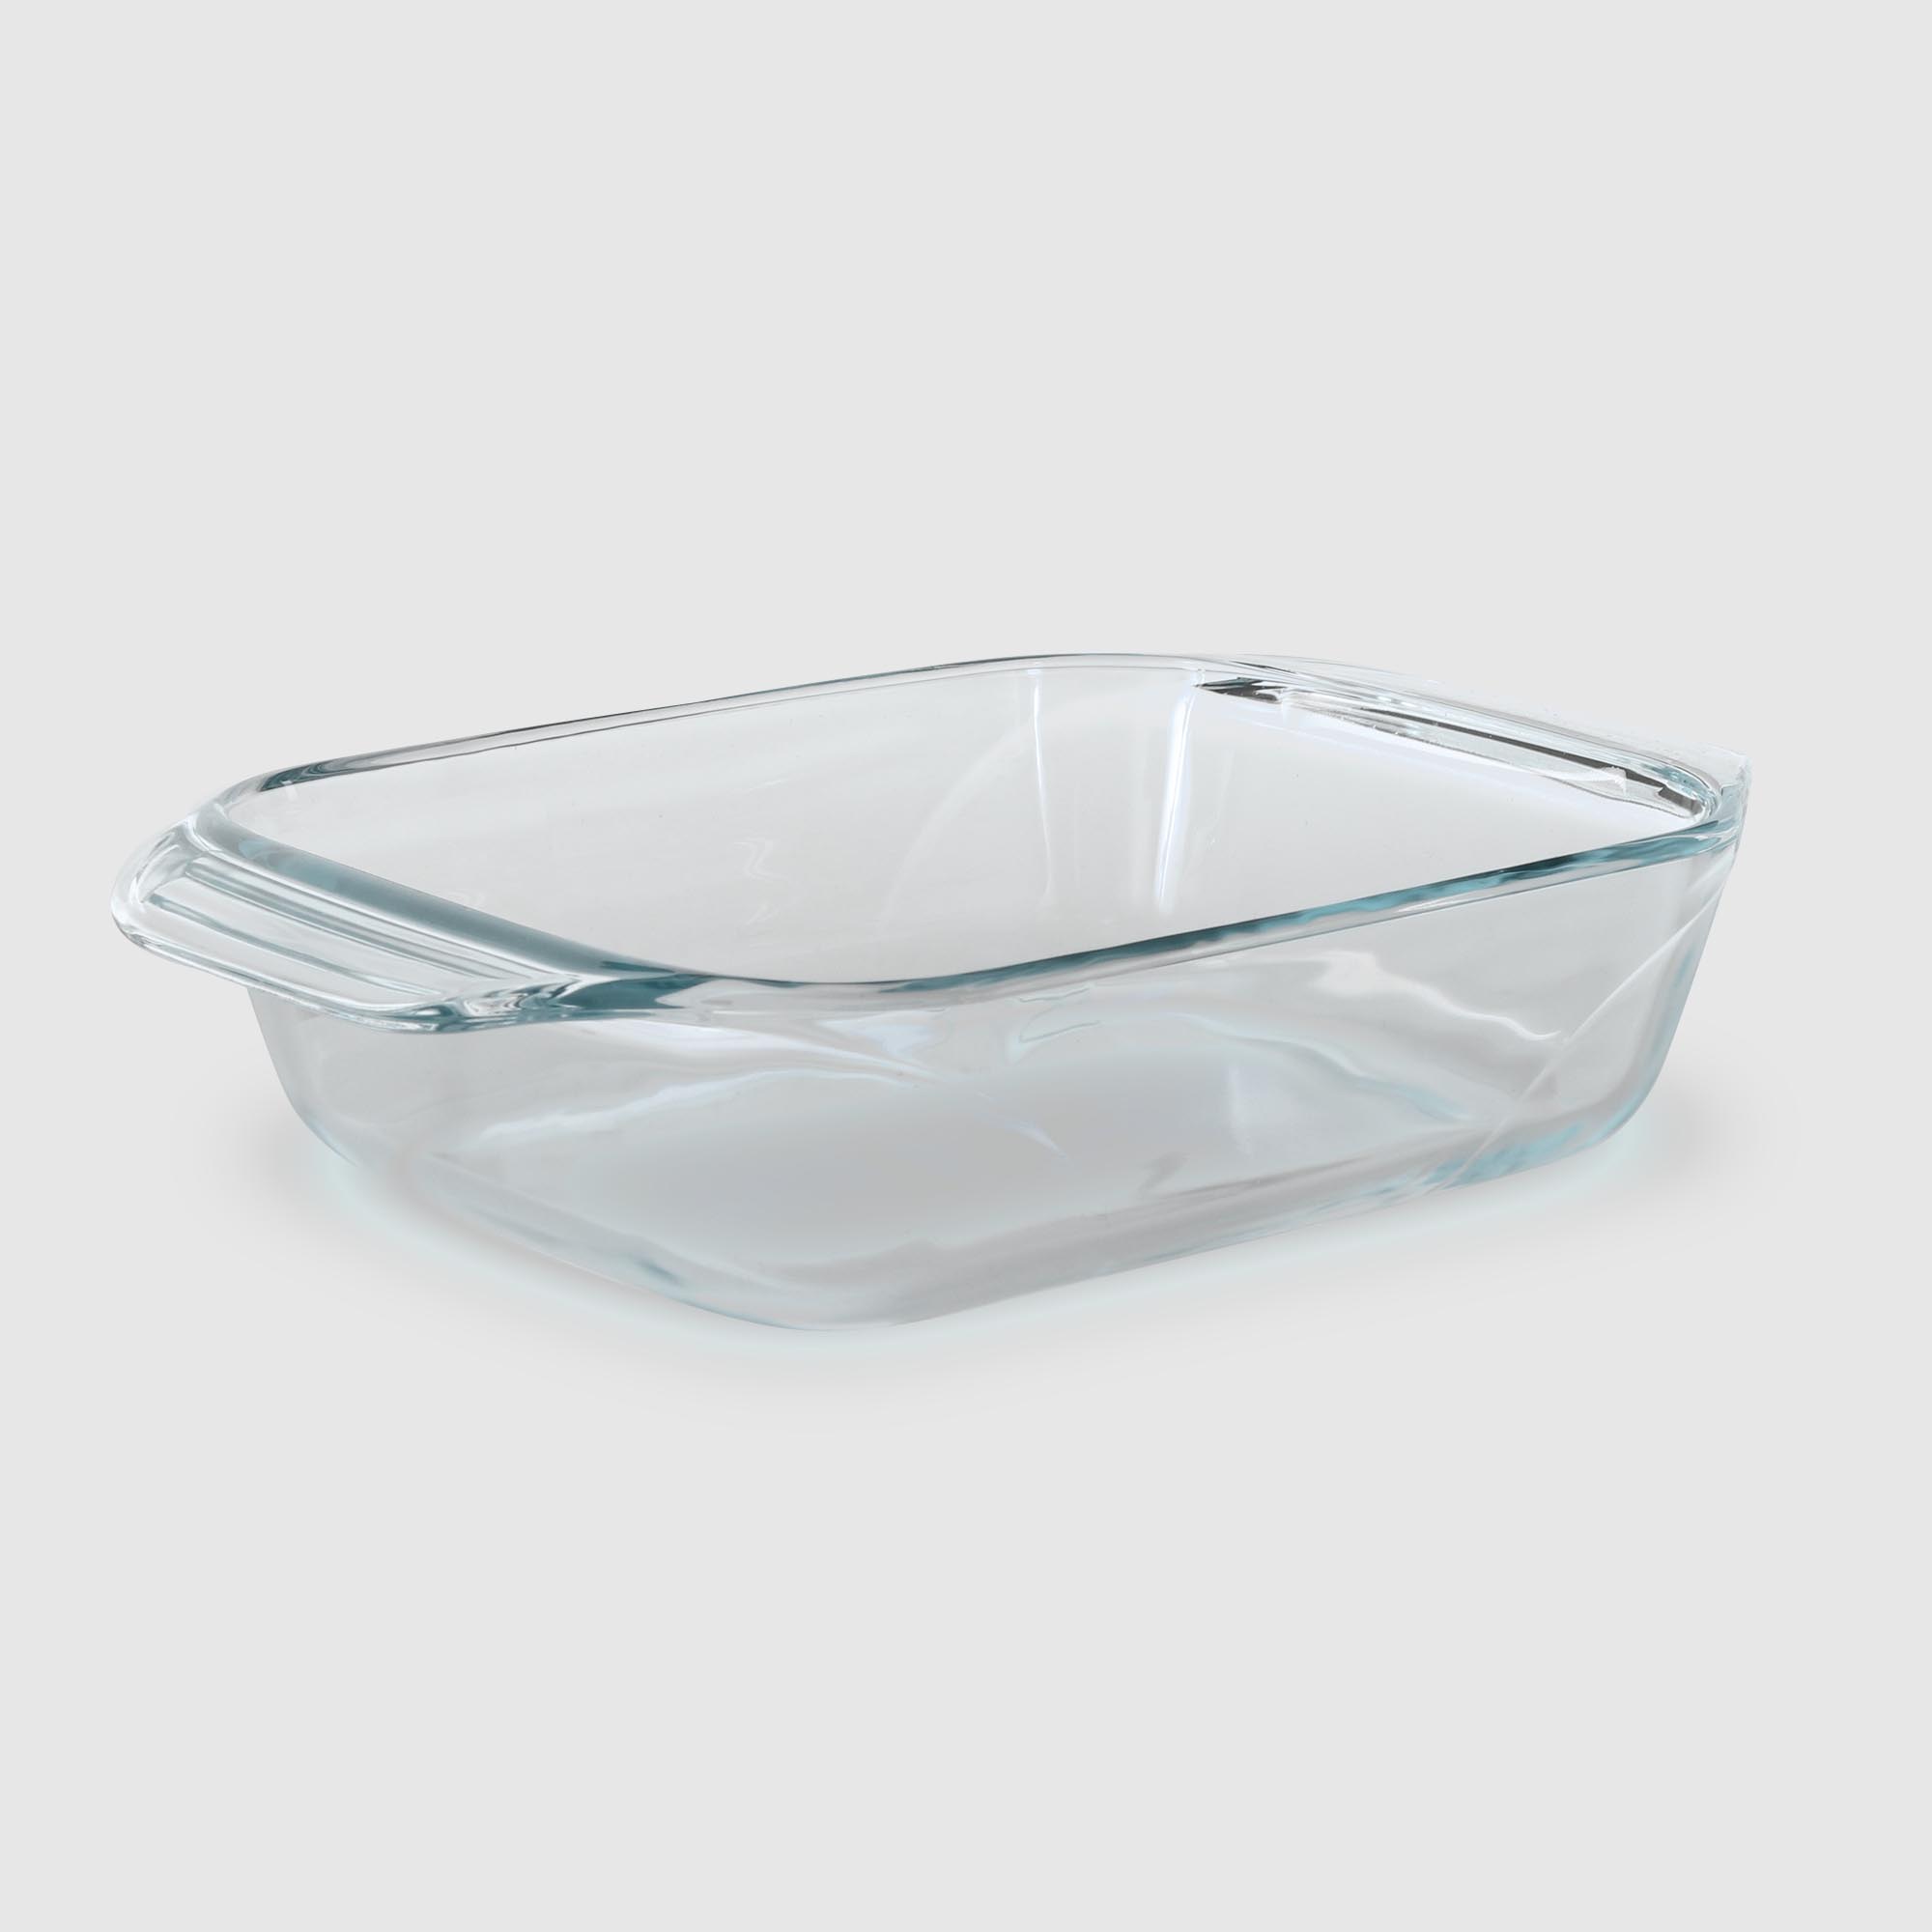 Где купить Форма для запекания Pyrex прямоугольная стекло 27х17 см Pyrex 